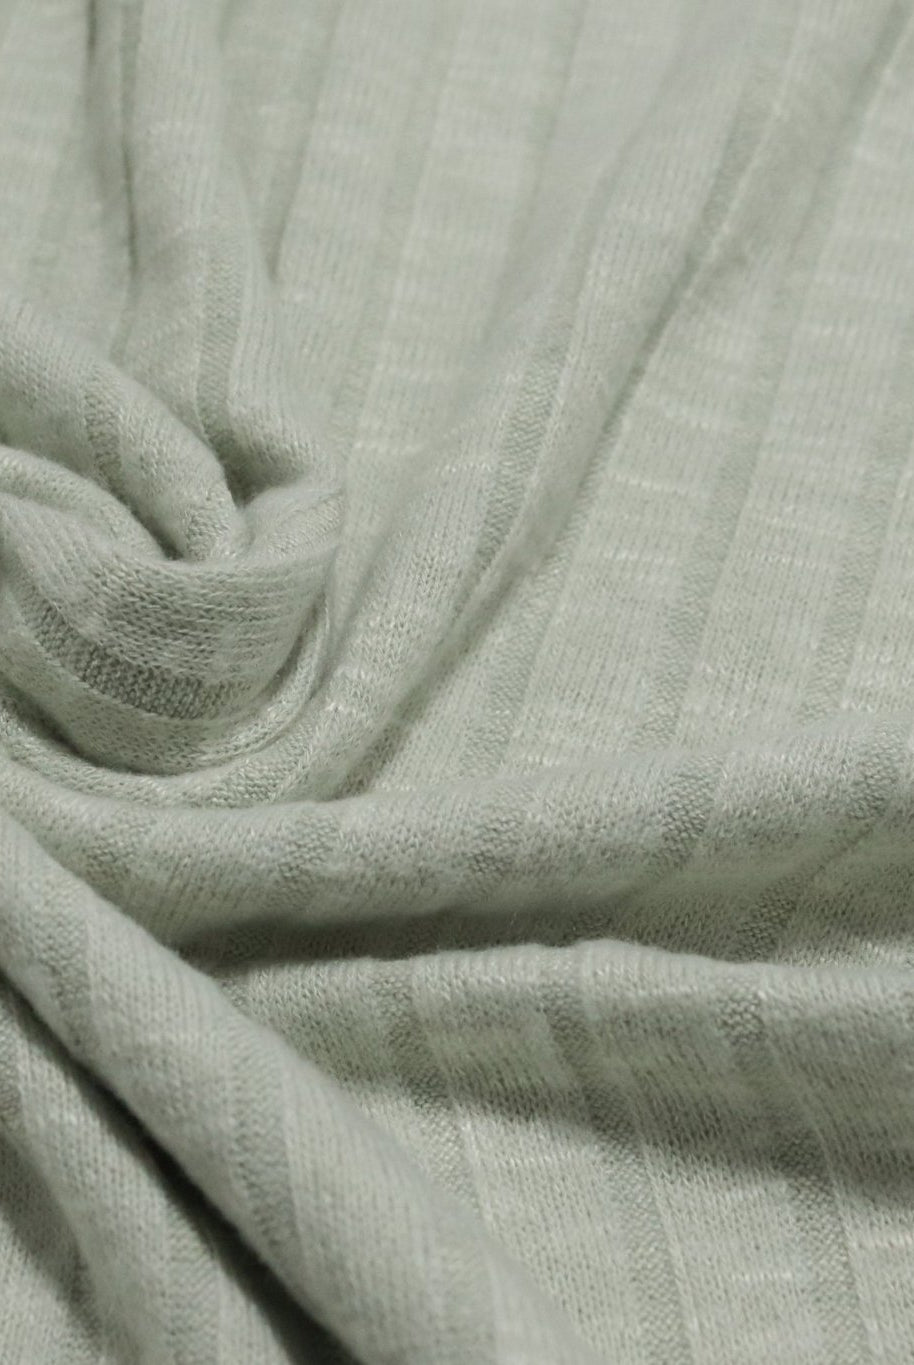 Light Pistachio Green 9x4 Brushed Rib Knit Fabric. BRIB-201-GRN - Boho Fabrics